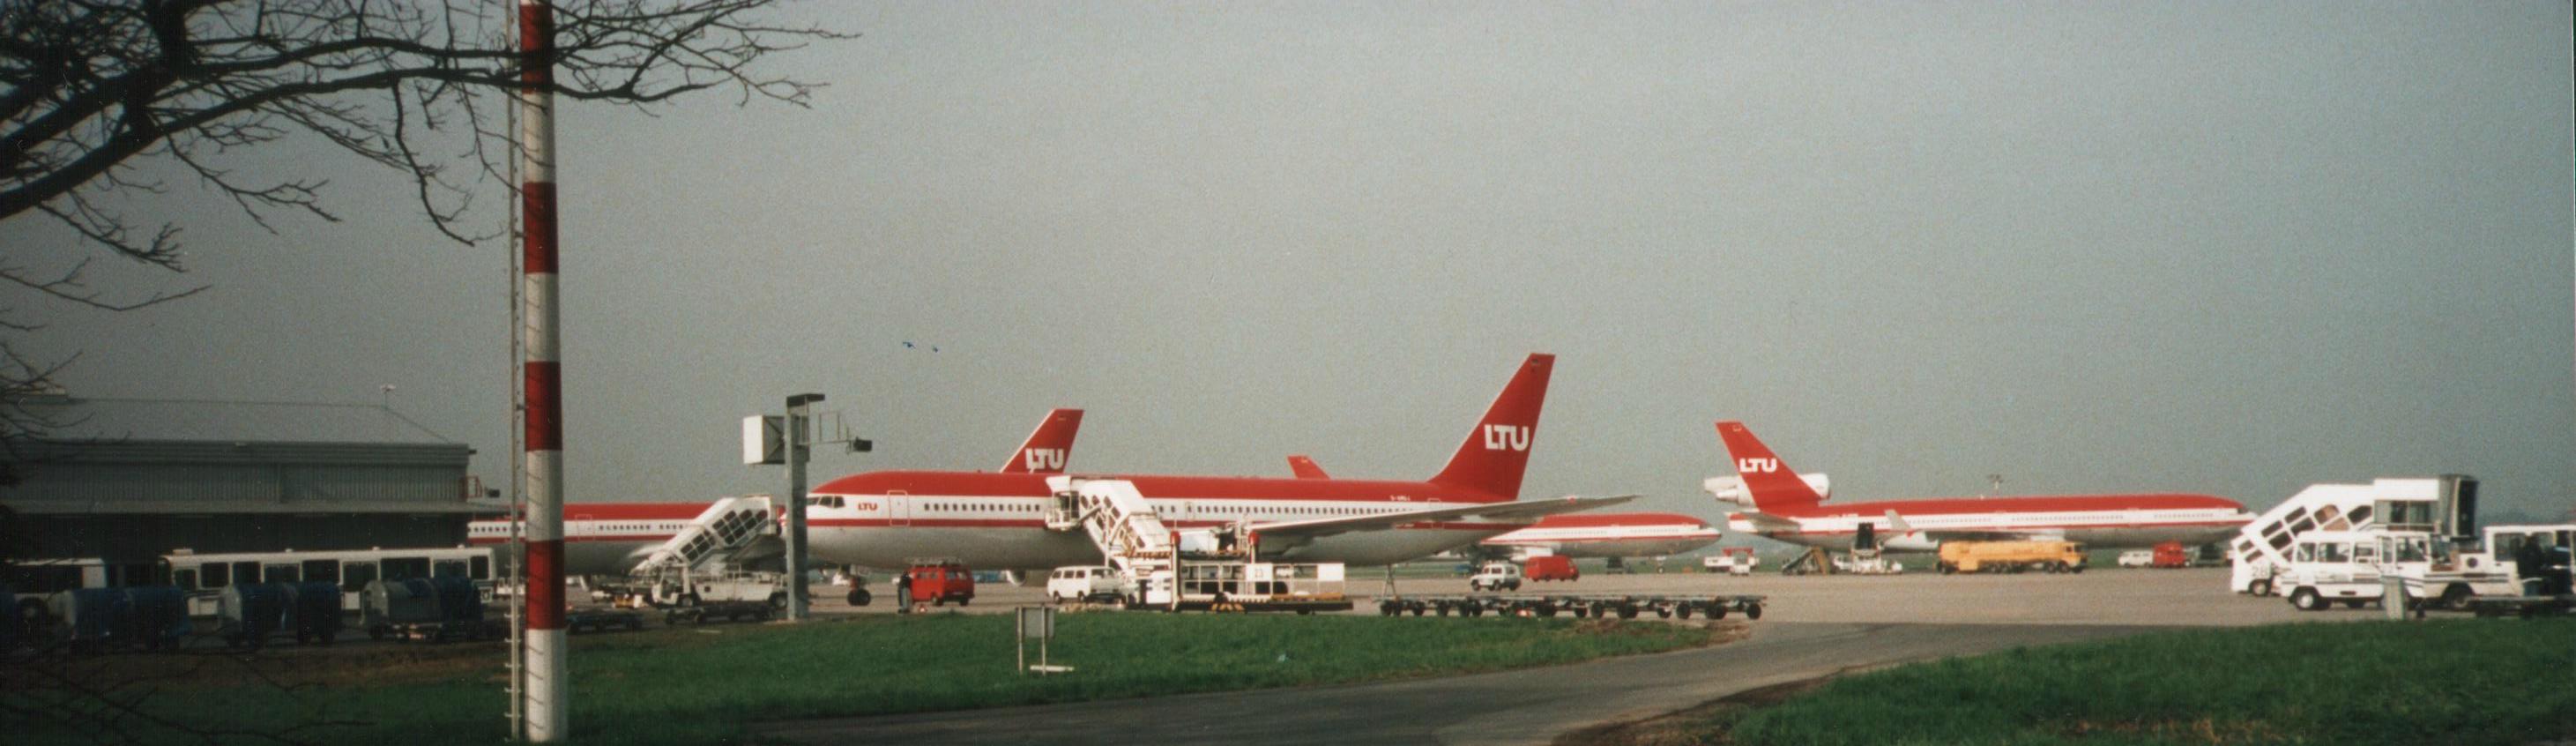 LTU Flieger DUS. Im hintergrund eine MD 11, vorne eine B767. Beide Flugzeuge werden heute nicht mehr bei LTU eingesetzt